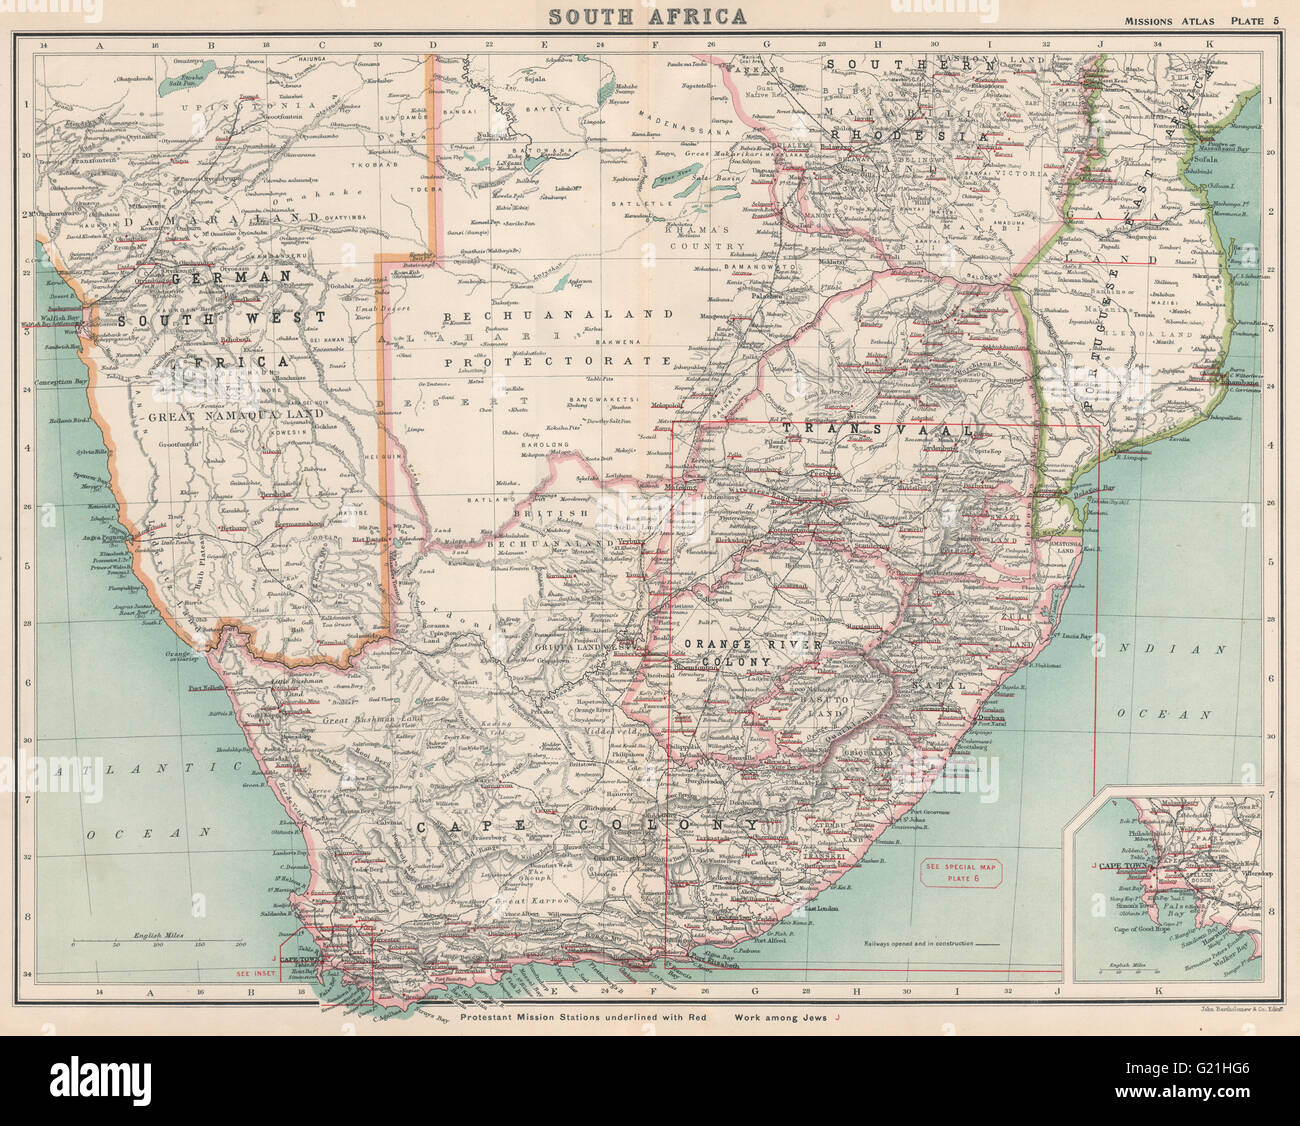 SÜDLICHEN AFRIKA PROTESTANTISCHEN MISSIONEN. Namibia-Rhodesien Betschuanaland, 1911-Karte Stockfoto